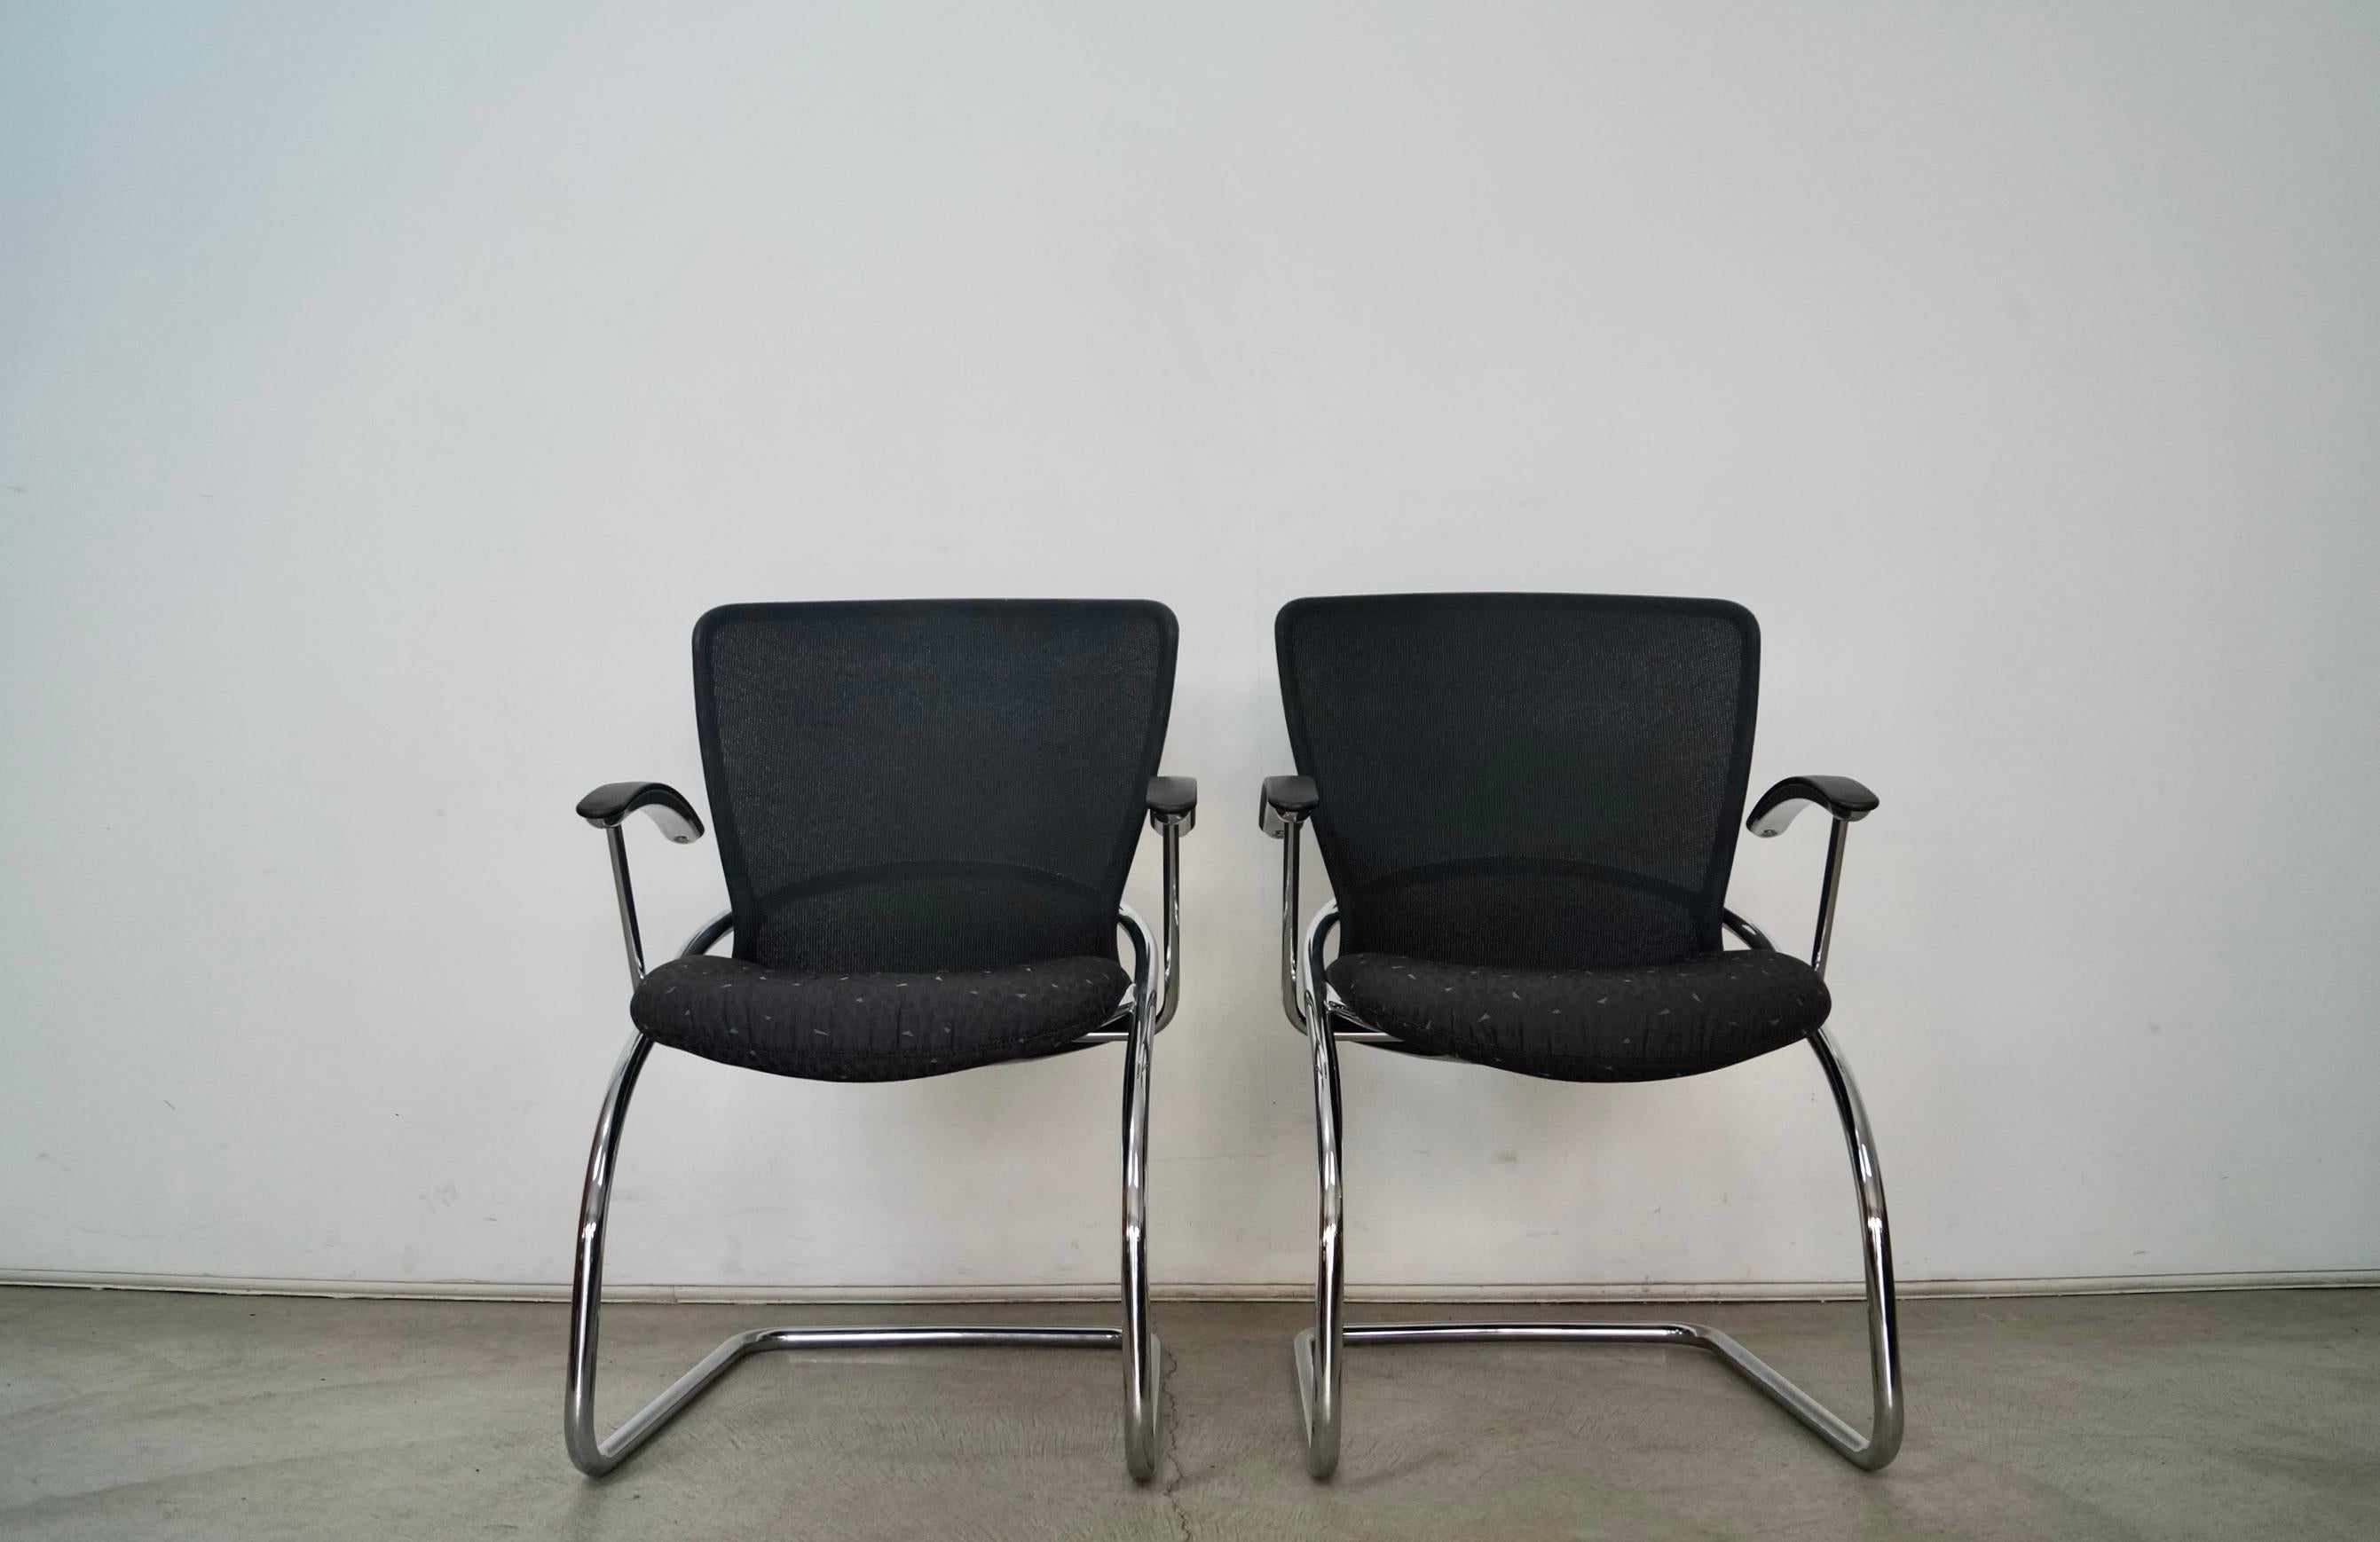 Vintage Postmodern Paar Sessel zu verkaufen. Sie wurden 1999 von der Designfirma König + Neurath hergestellt und sind die Diva-Stühle. Sie wurden in Deutschland hergestellt und sind im Bauhaus-Stil gehalten. Sie sind in ausgezeichnetem Zustand und